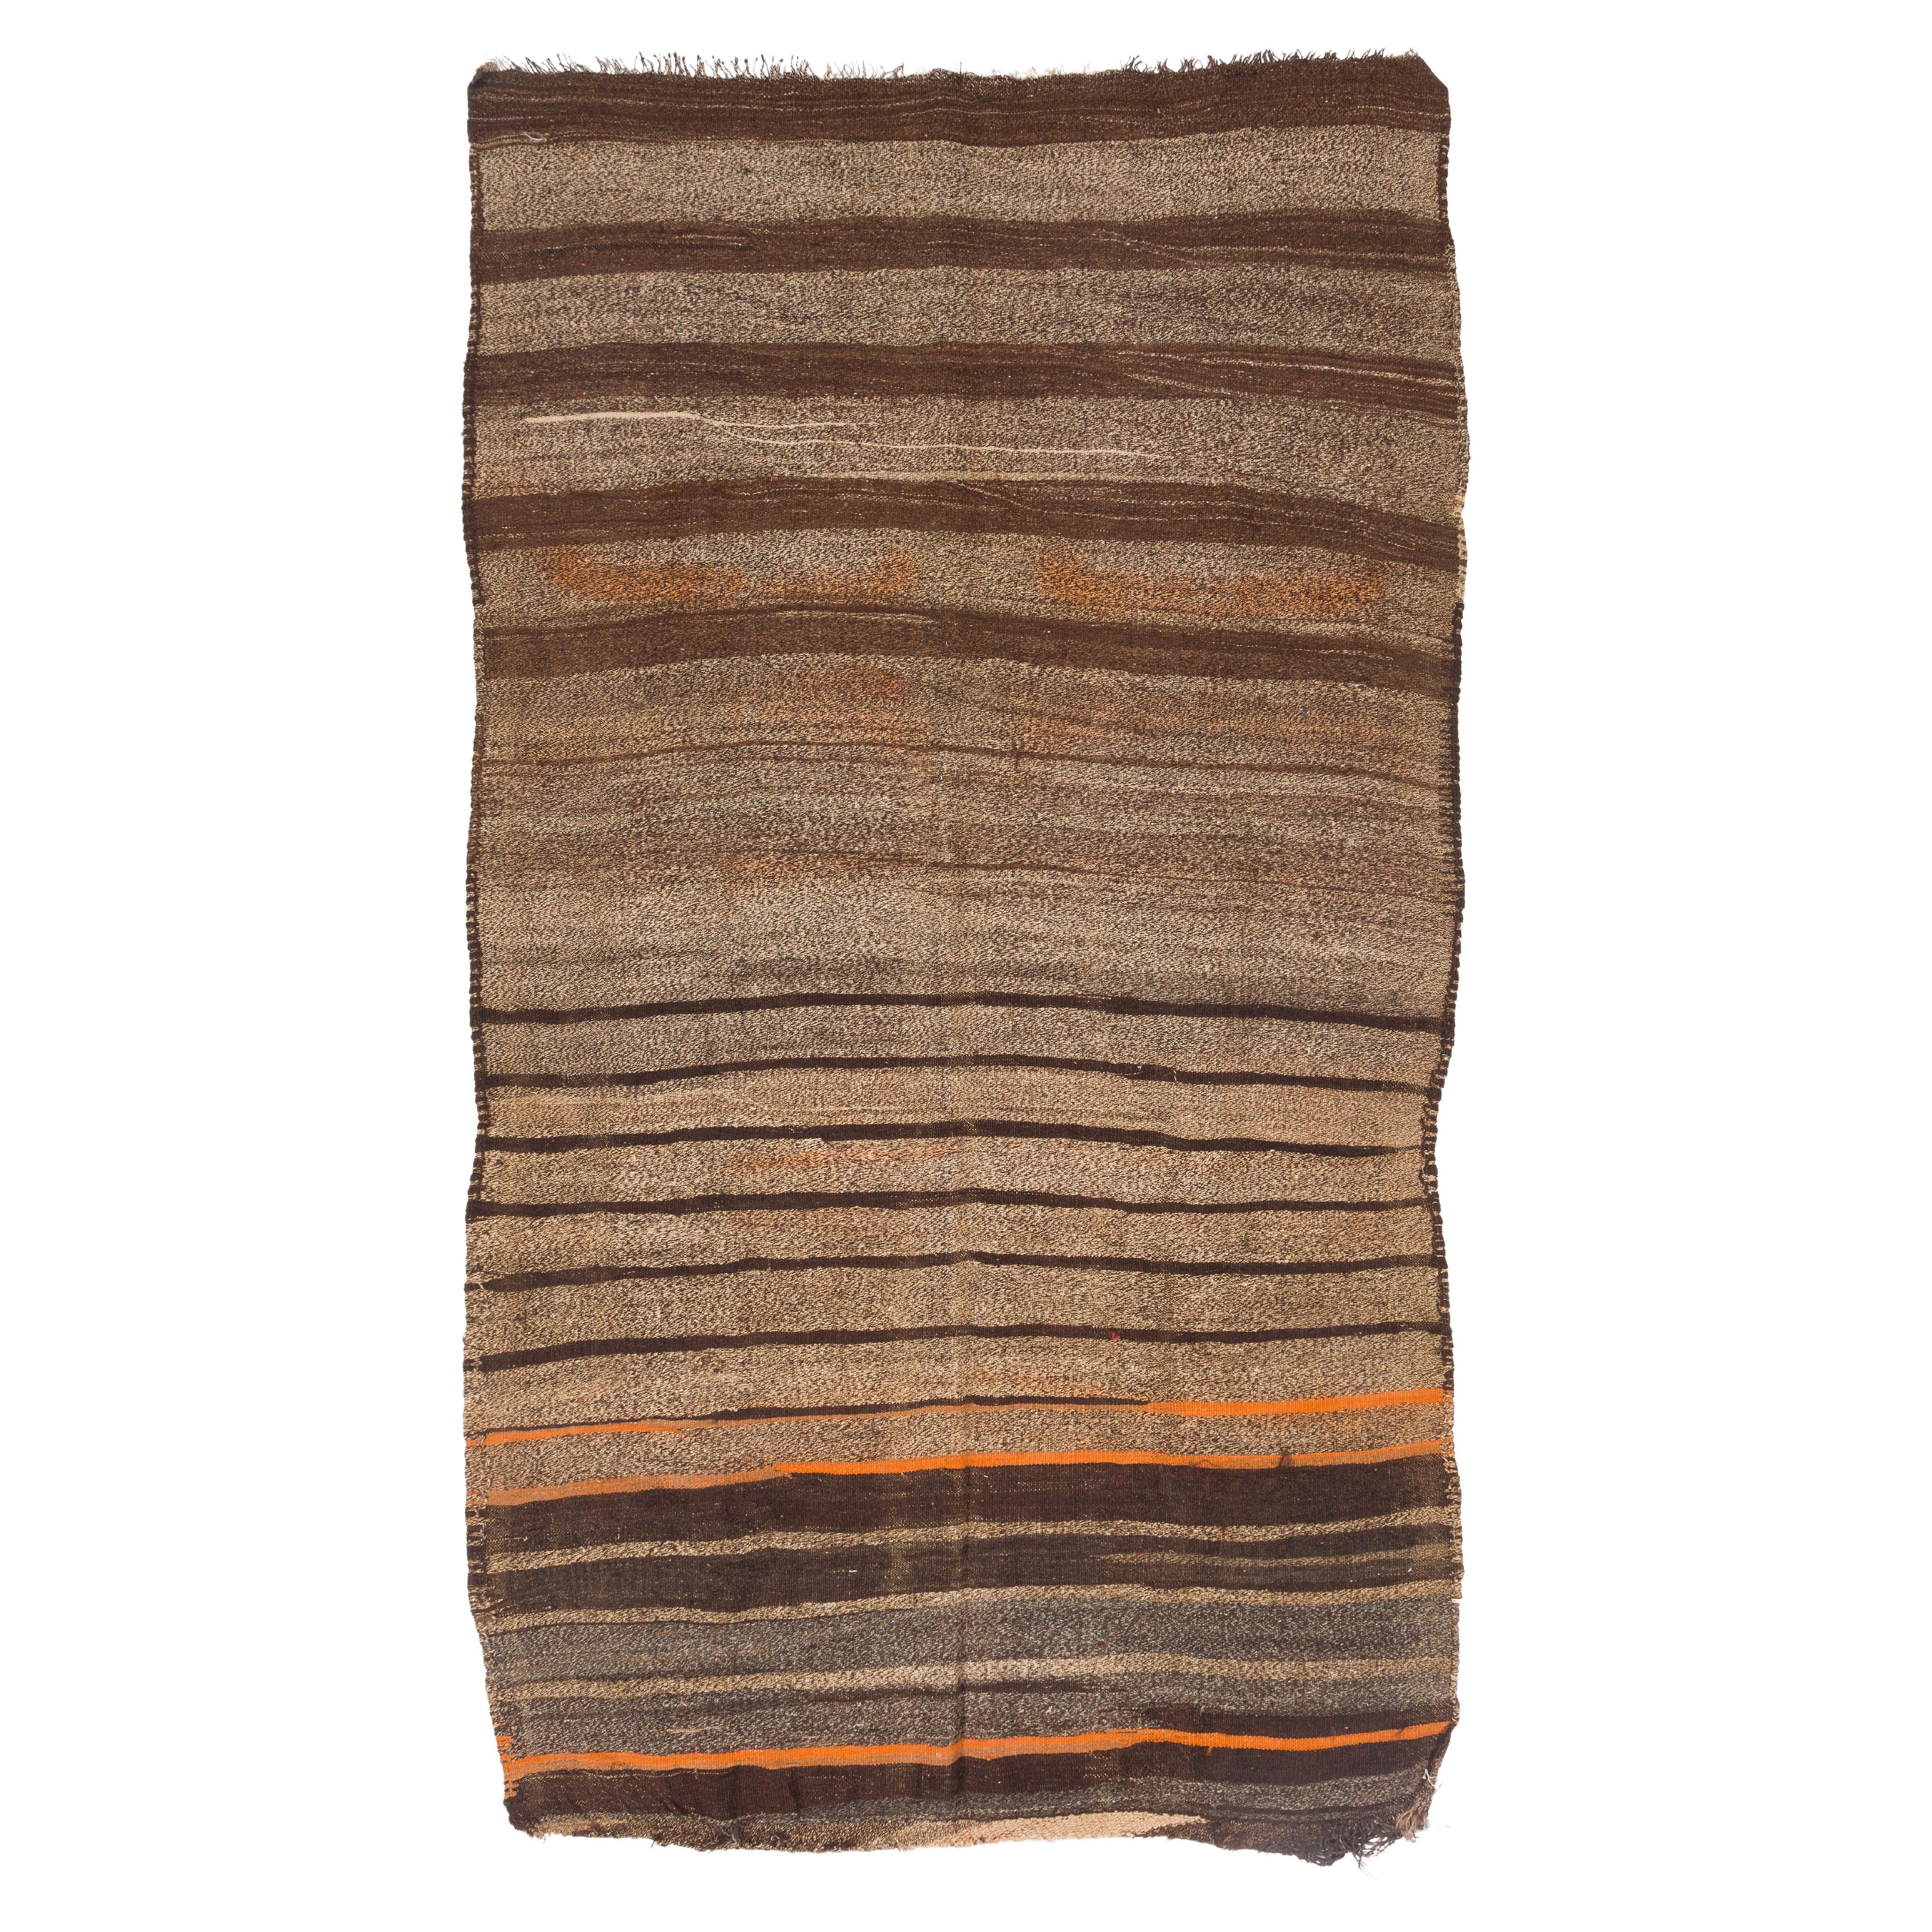 5.7x7.6 Ft Striped Vintage Handmade Wool Runner Kilim in Brown, Beige and Orange